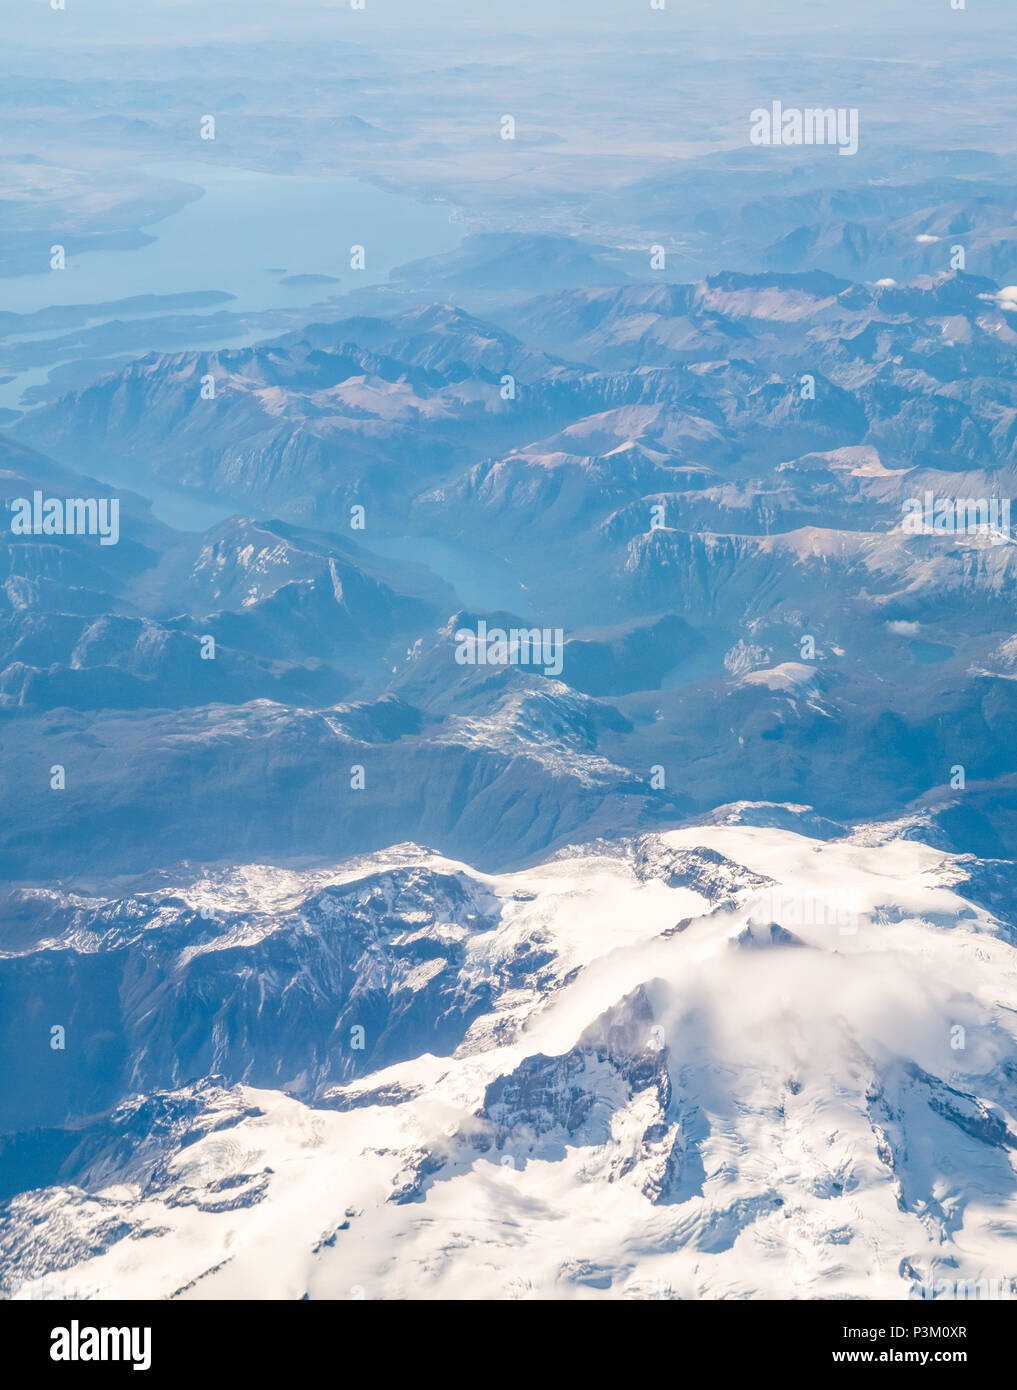 Vue depuis la fenêtre de l'avion de la neige a couvert des Andes avec des lacs et des glaciers de Patagonie australe, champ de glace, Patagonie, Chili, Amérique du Sud Banque D'Images